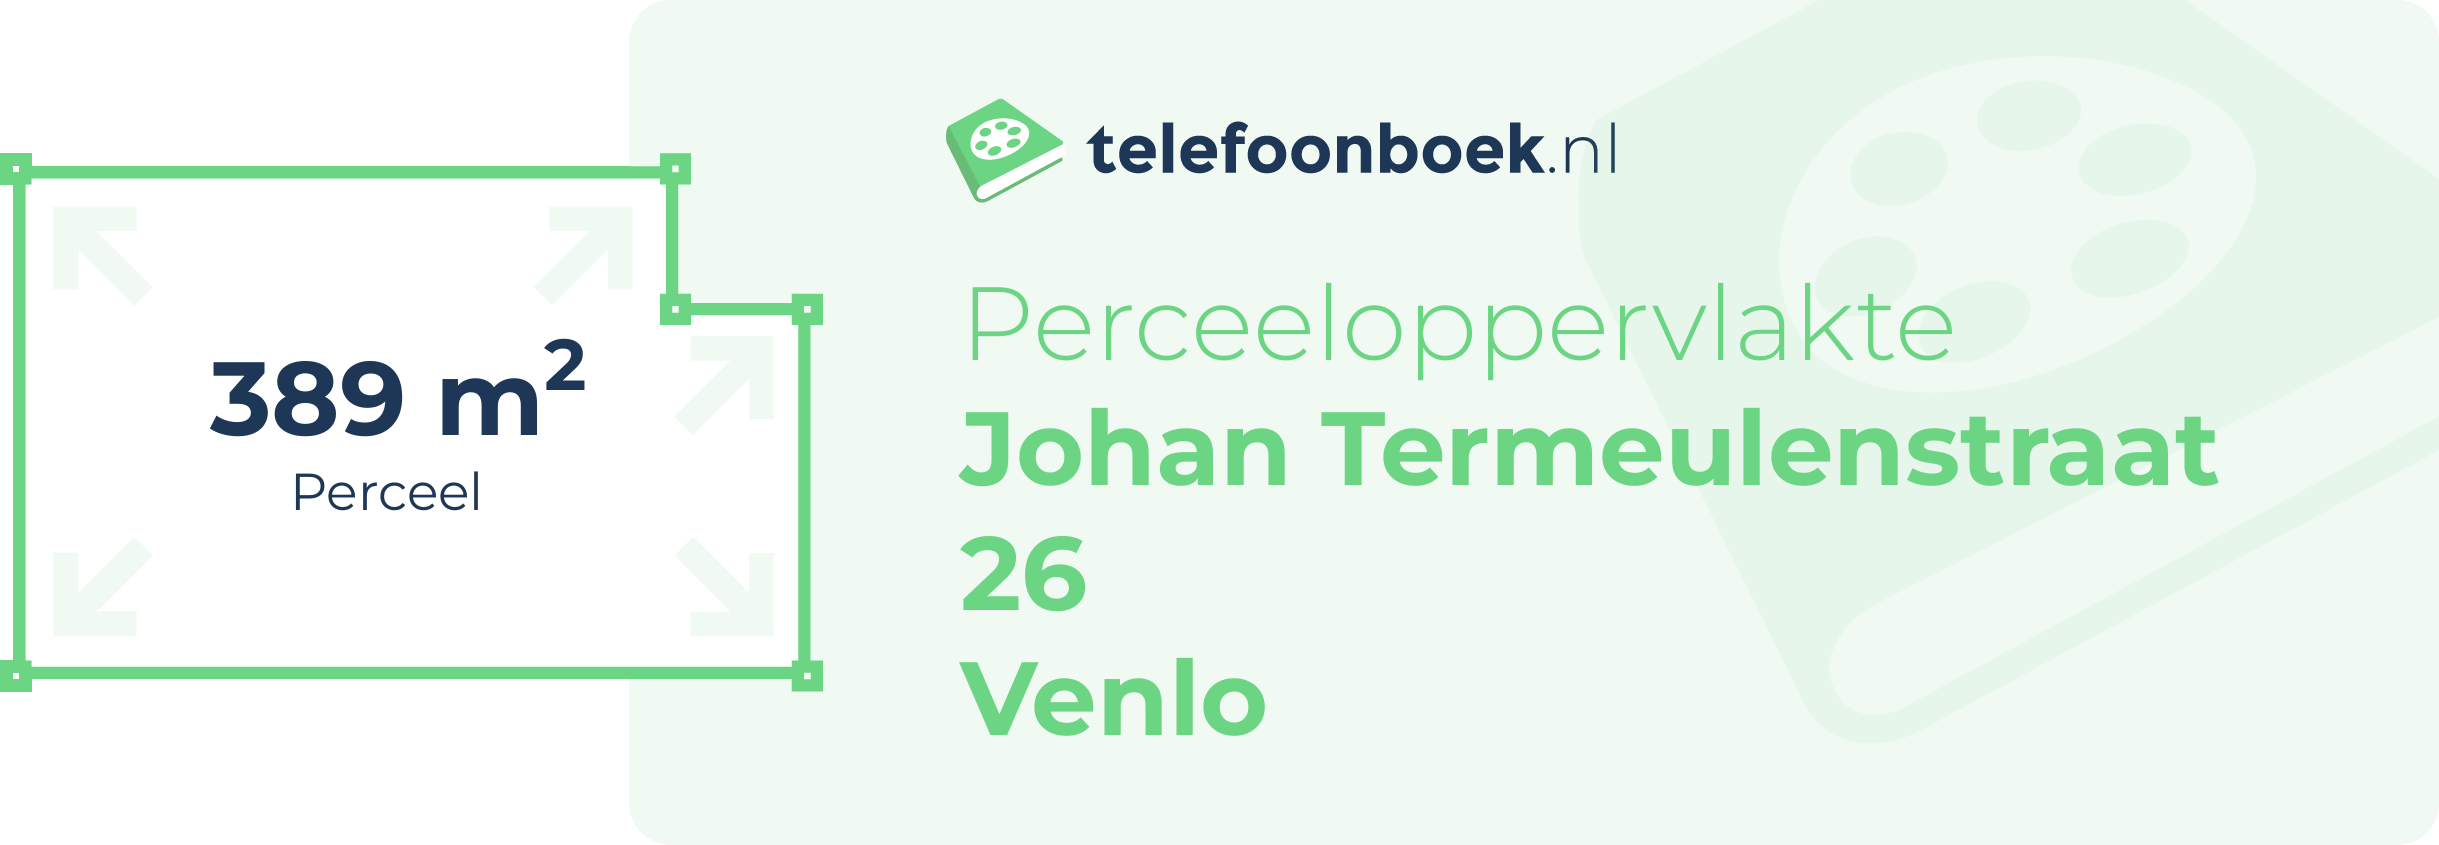 Perceeloppervlakte Johan Termeulenstraat 26 Venlo